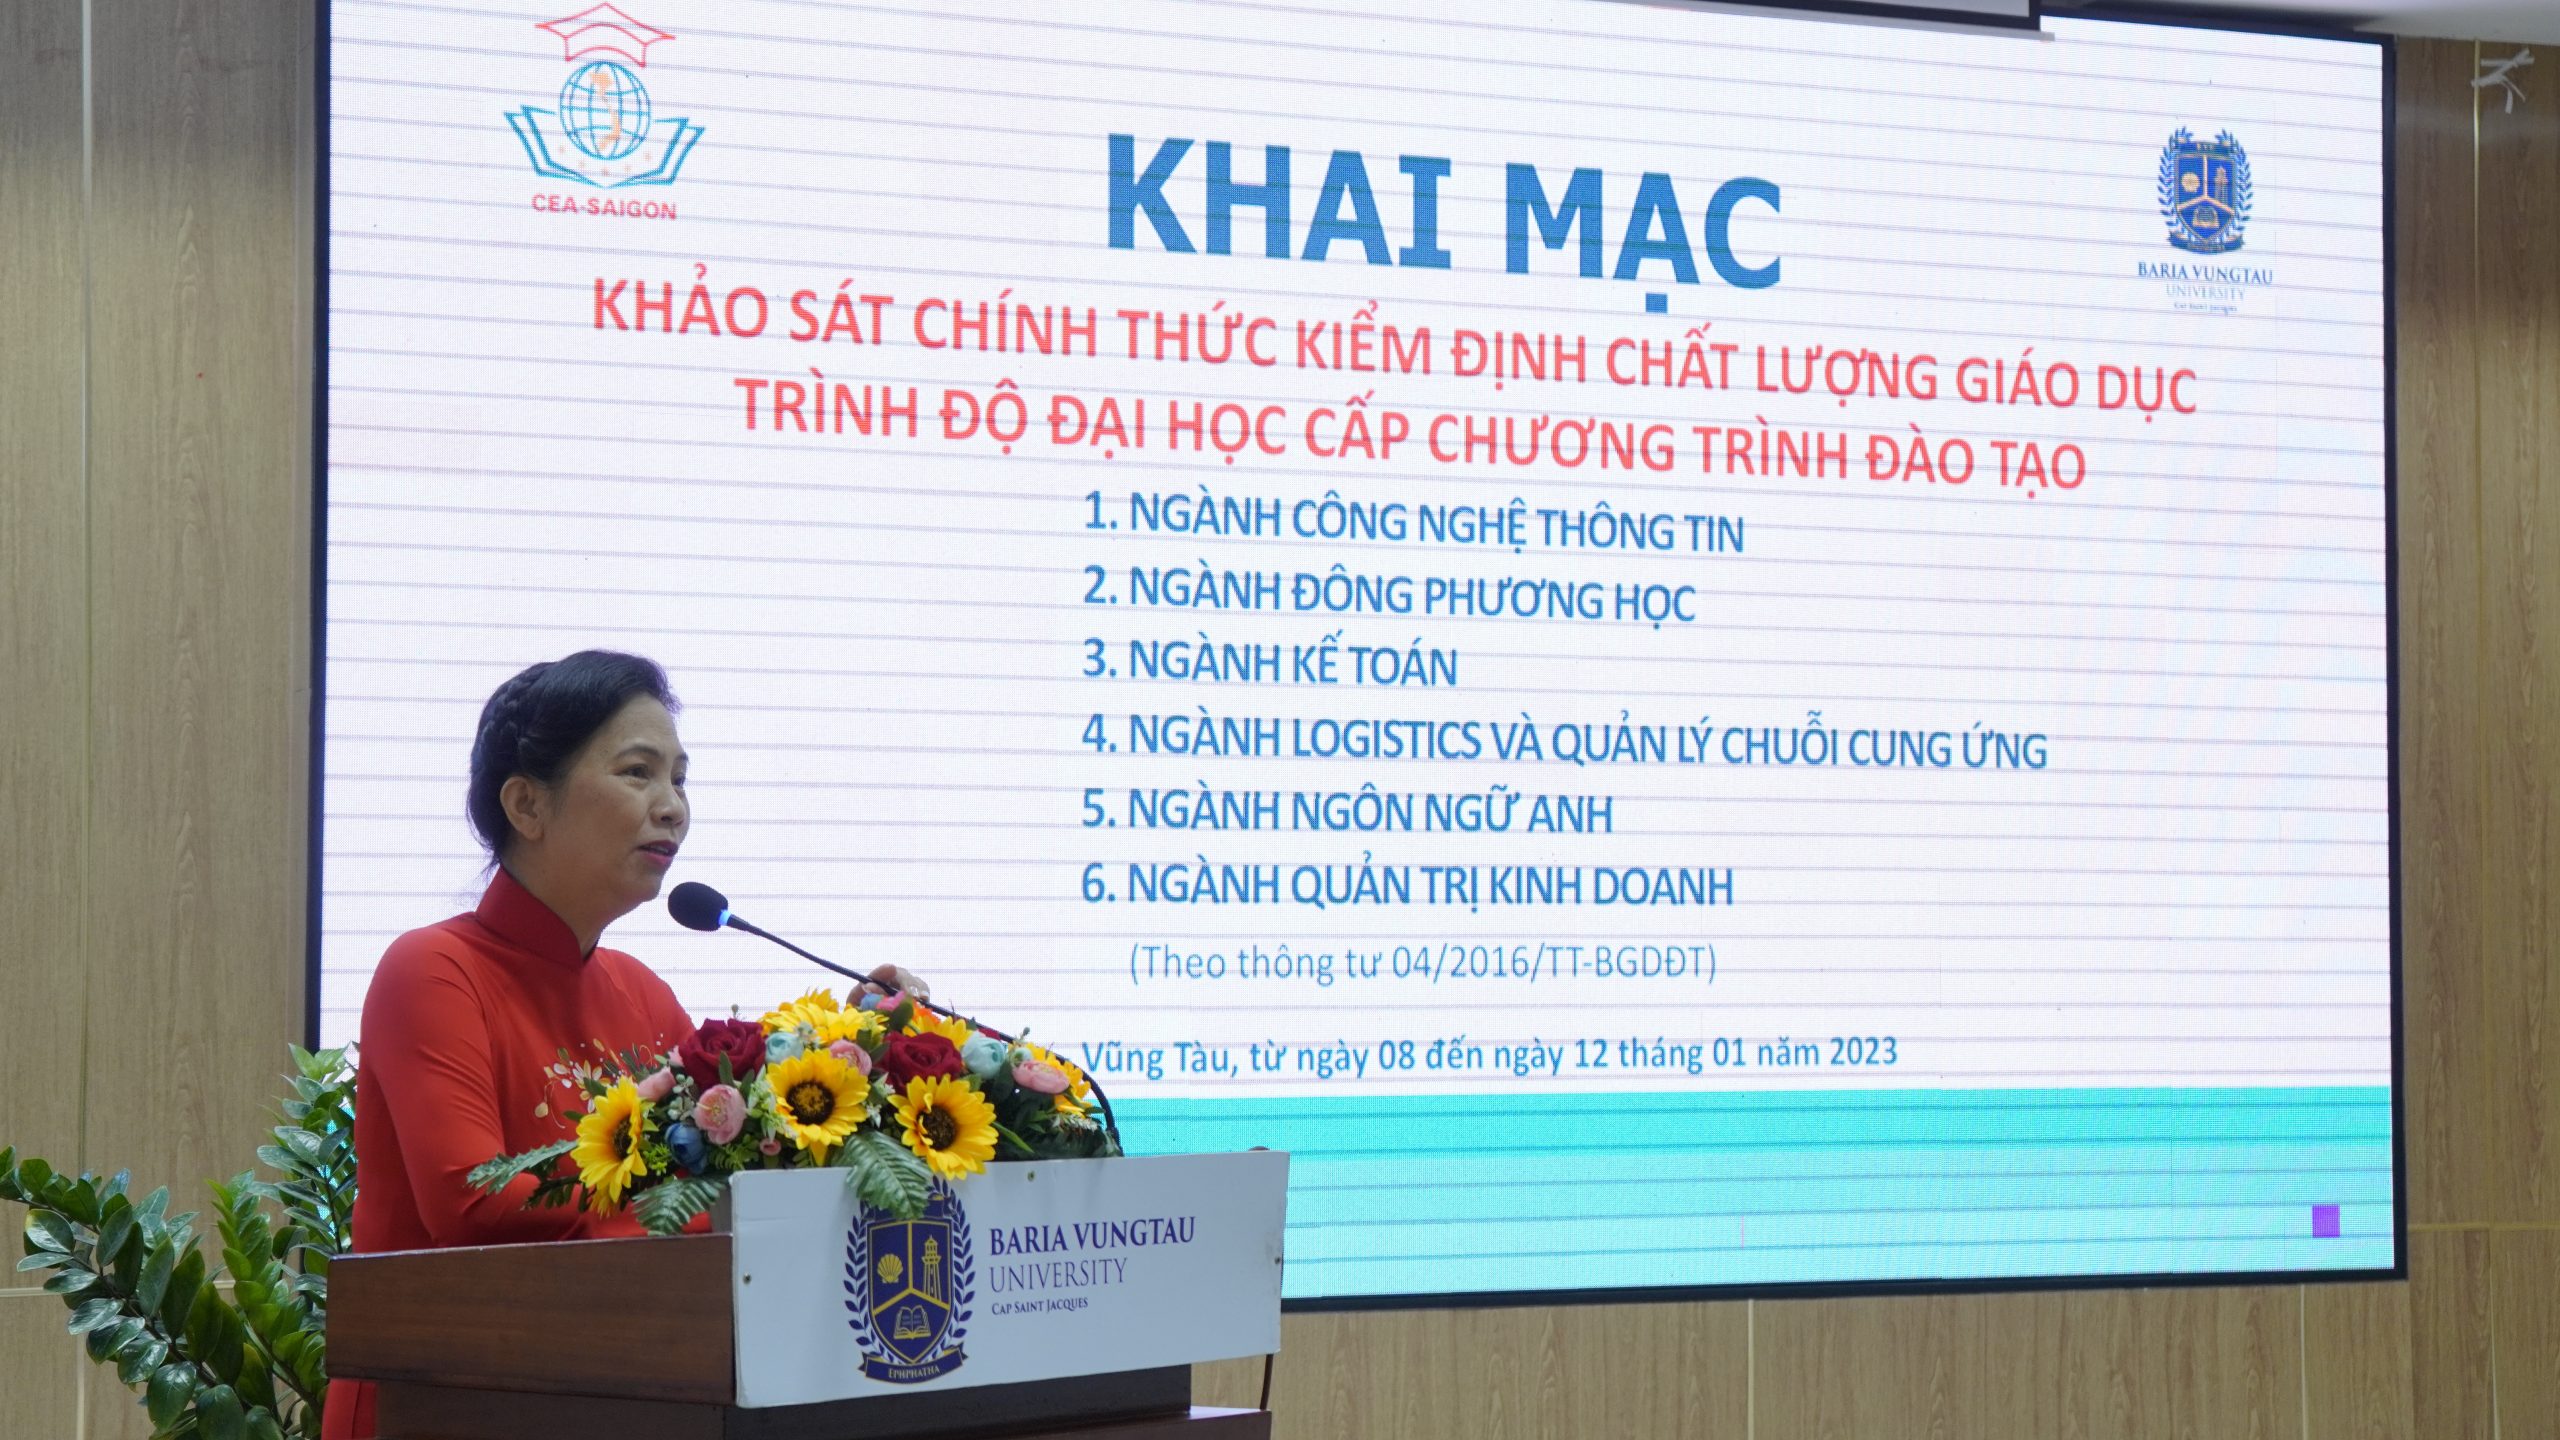 PGS.TS.LS Nguyễn Thị Hoài Phương – Hiệu trưởng phát biểu chào mừng Lễ Khai mạc